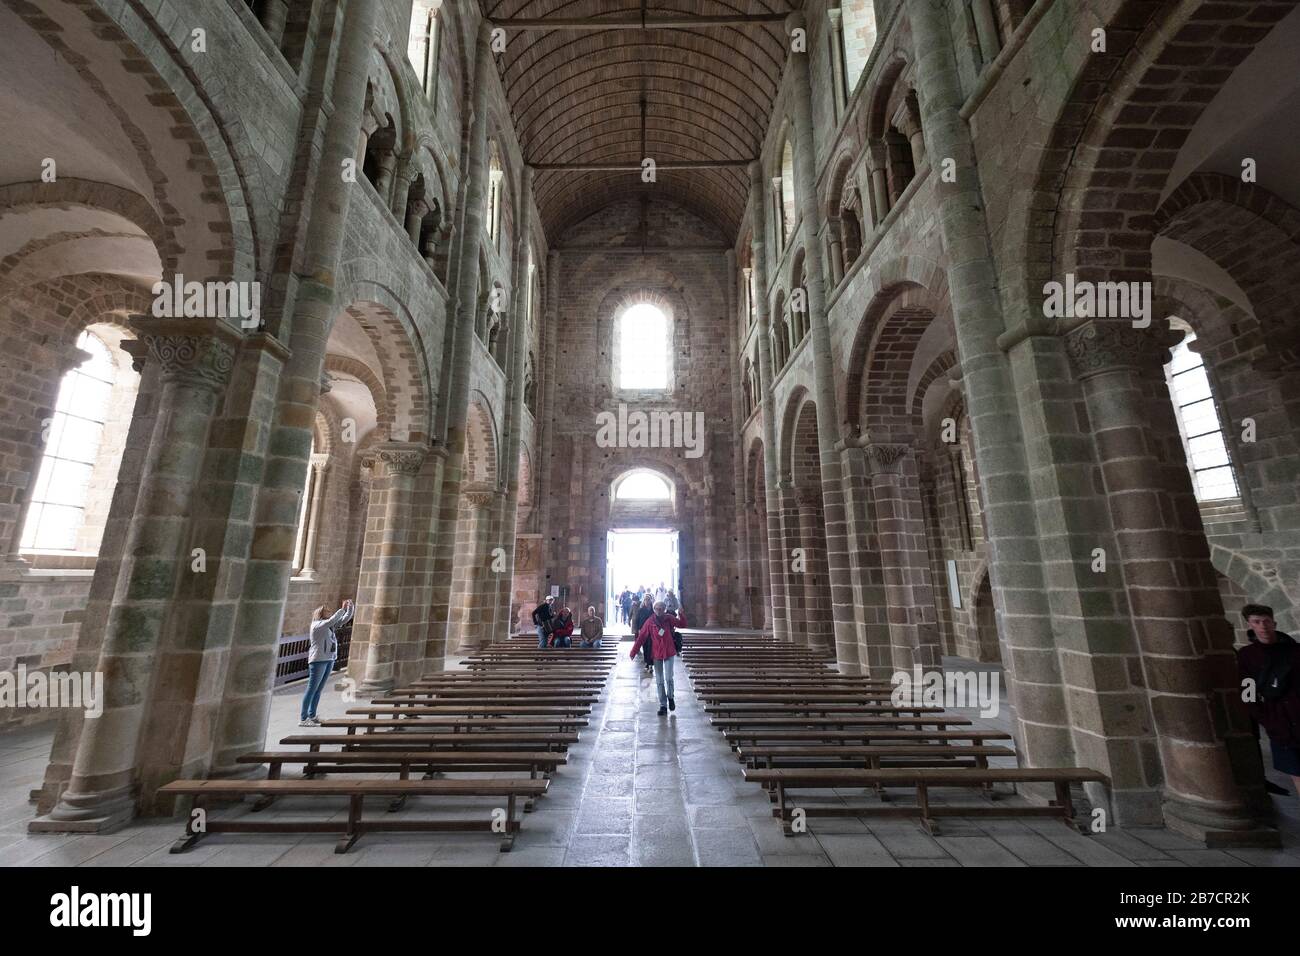 Reiseleiter, der ihre Gruppe im Inneren des Kirchenschiffs der Montéli-Saint-Michel-Abteikirche, Normandie, Frankreich, Europa führt Stockfoto